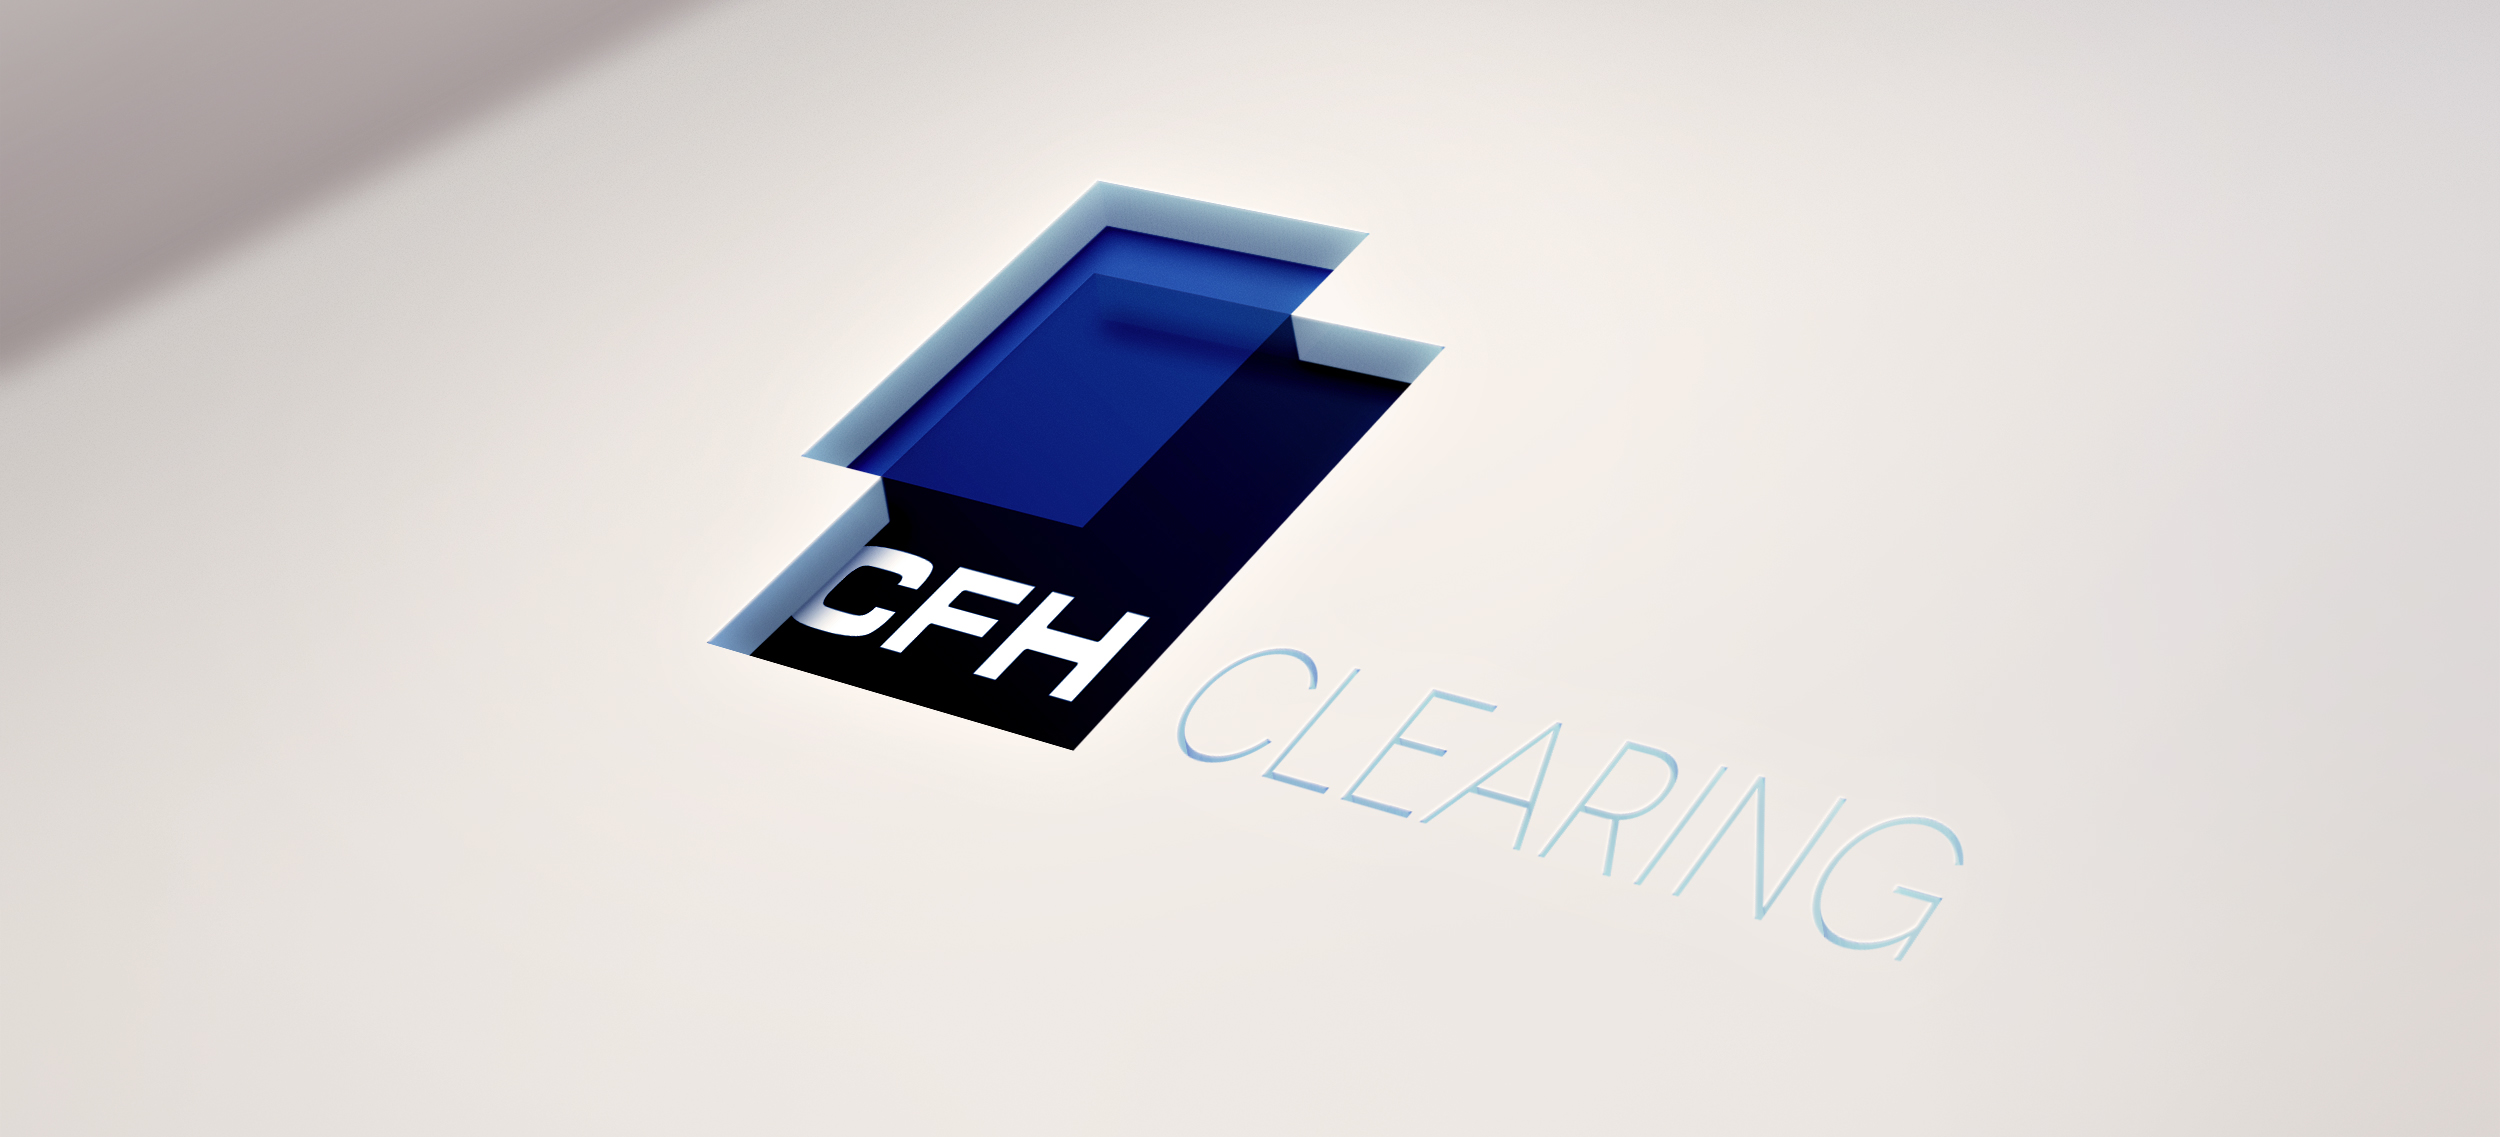 CFH_Clearing_Cutout-Logo.jpg